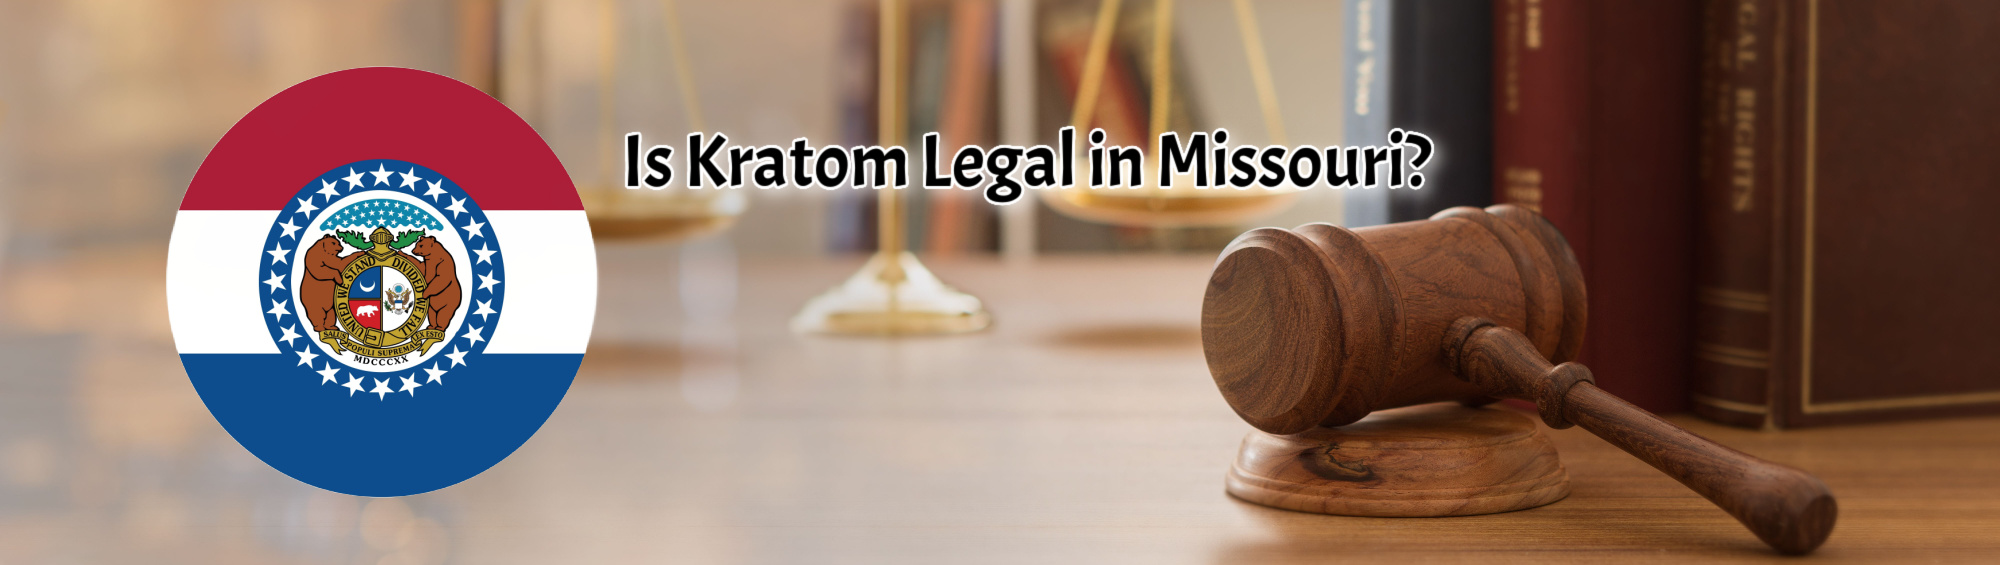 image of is kratom legal in missouri